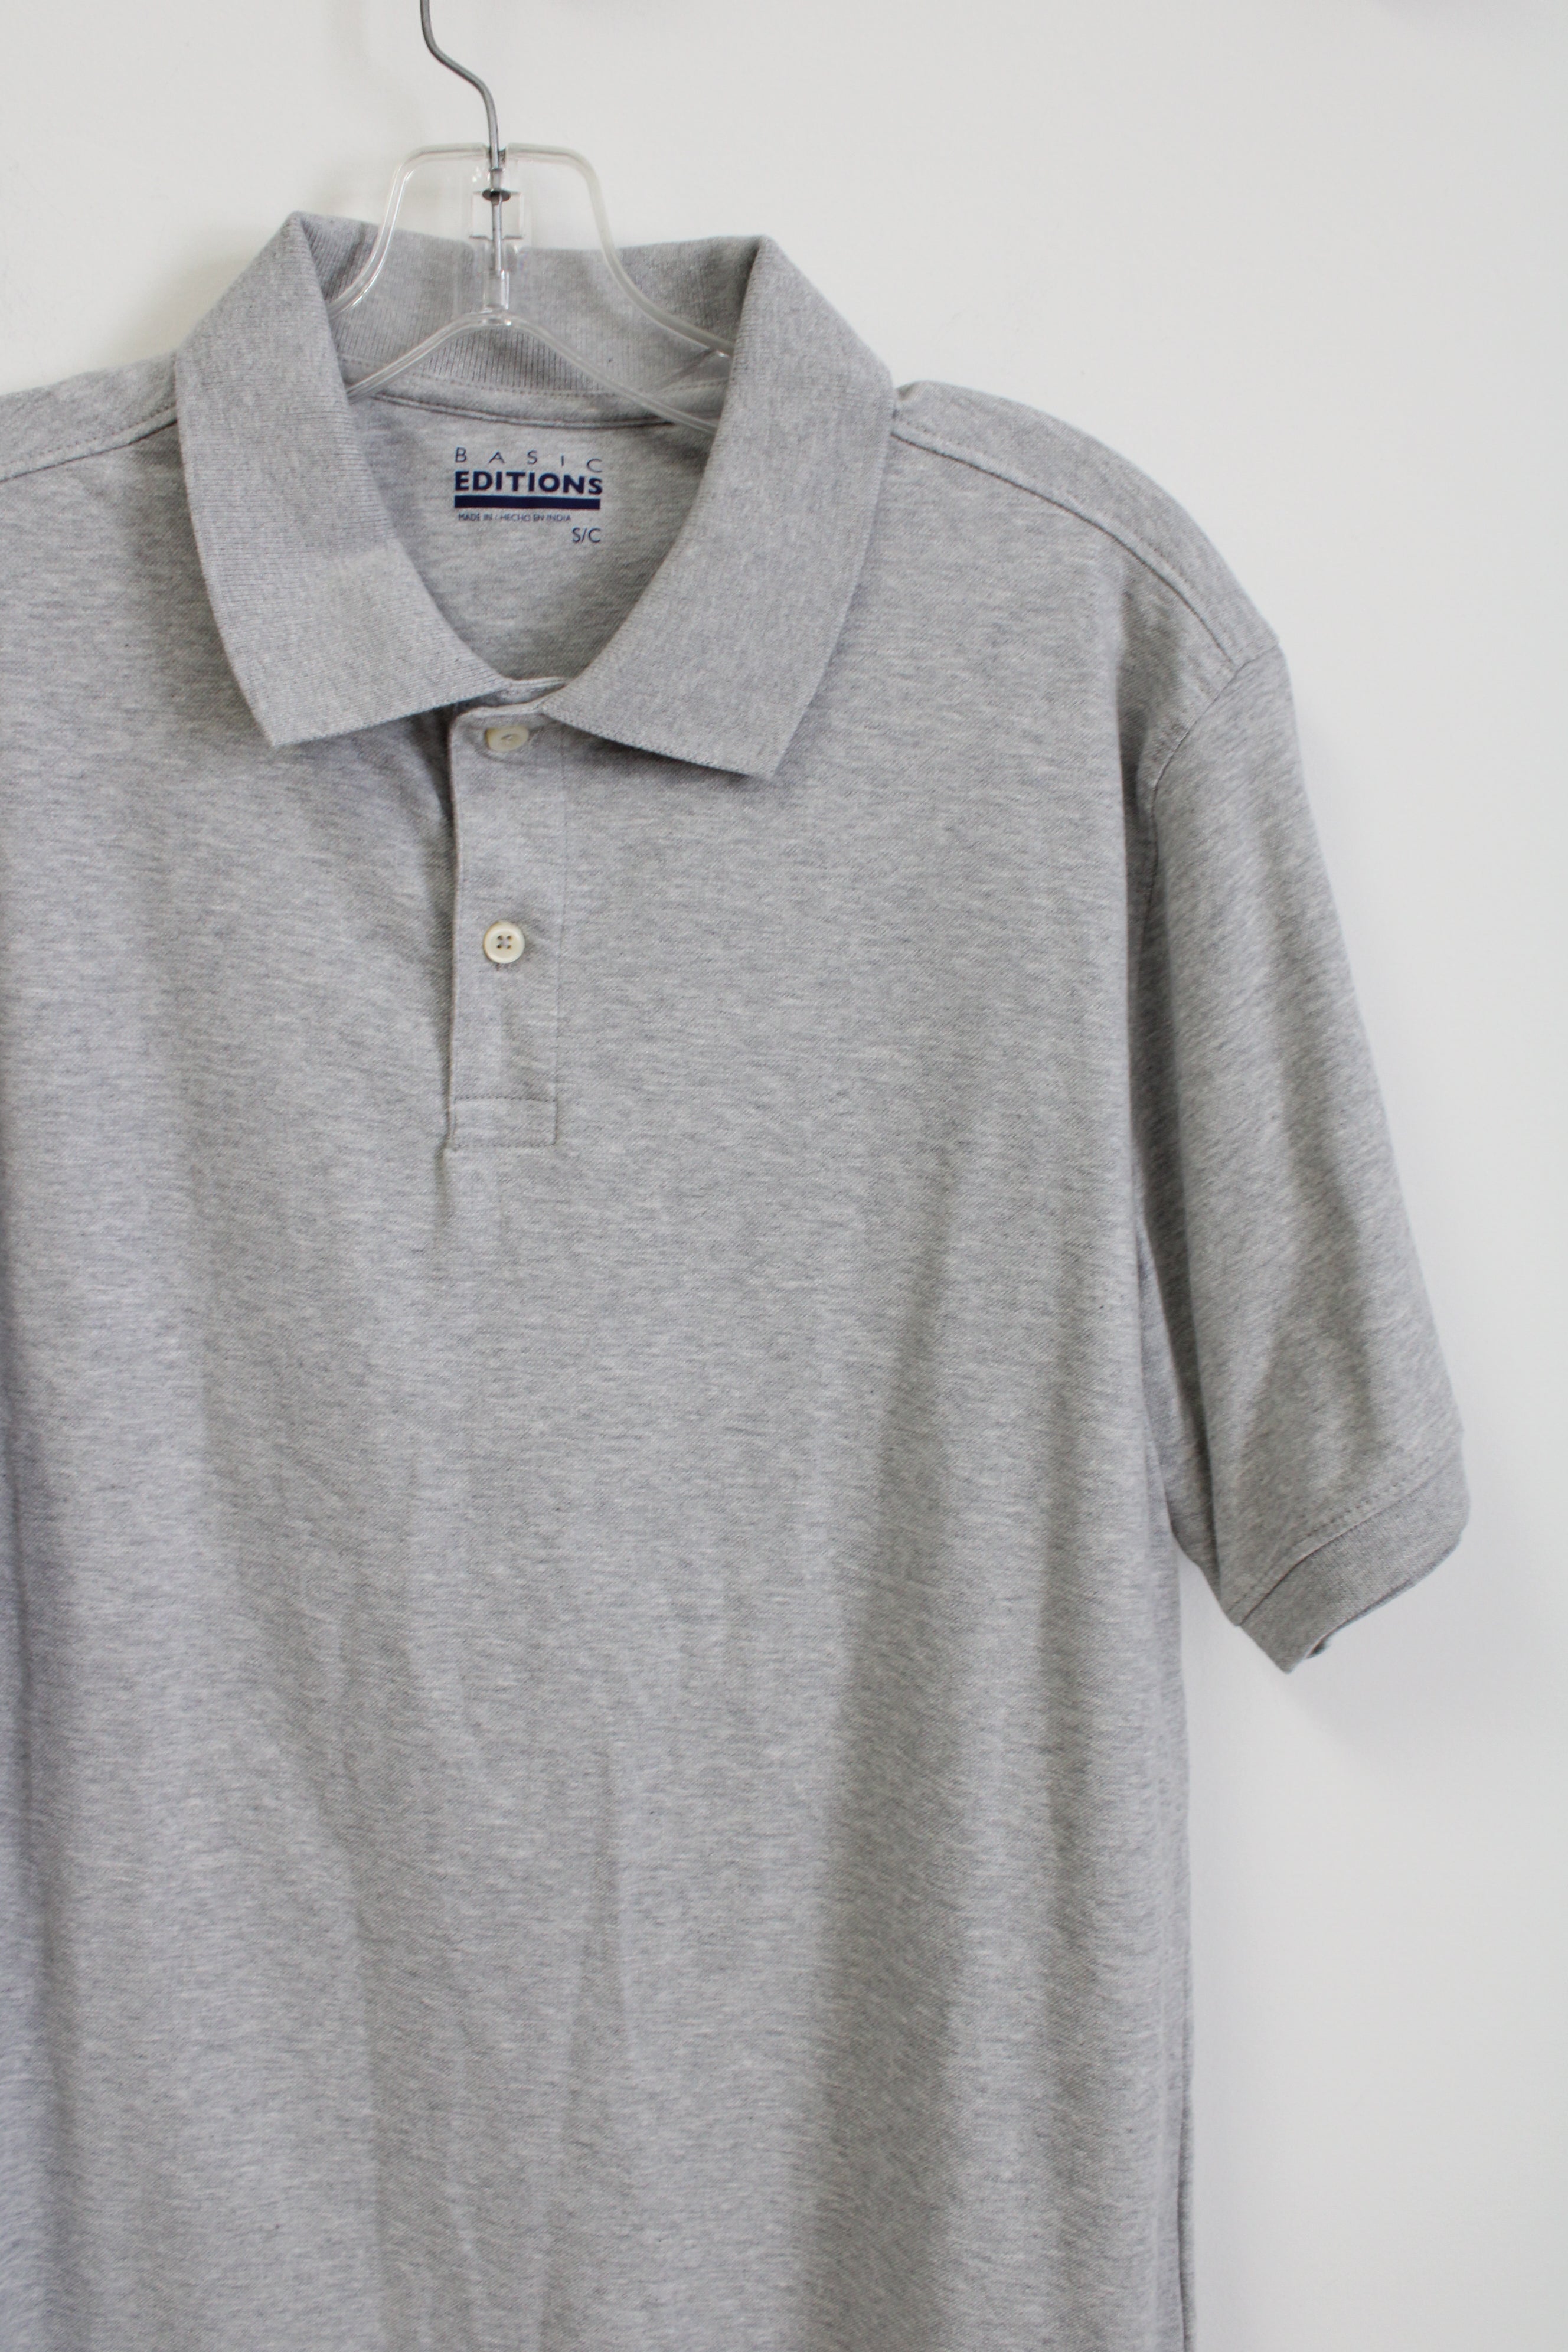 Basic Editions Gray Polo Shirt | S